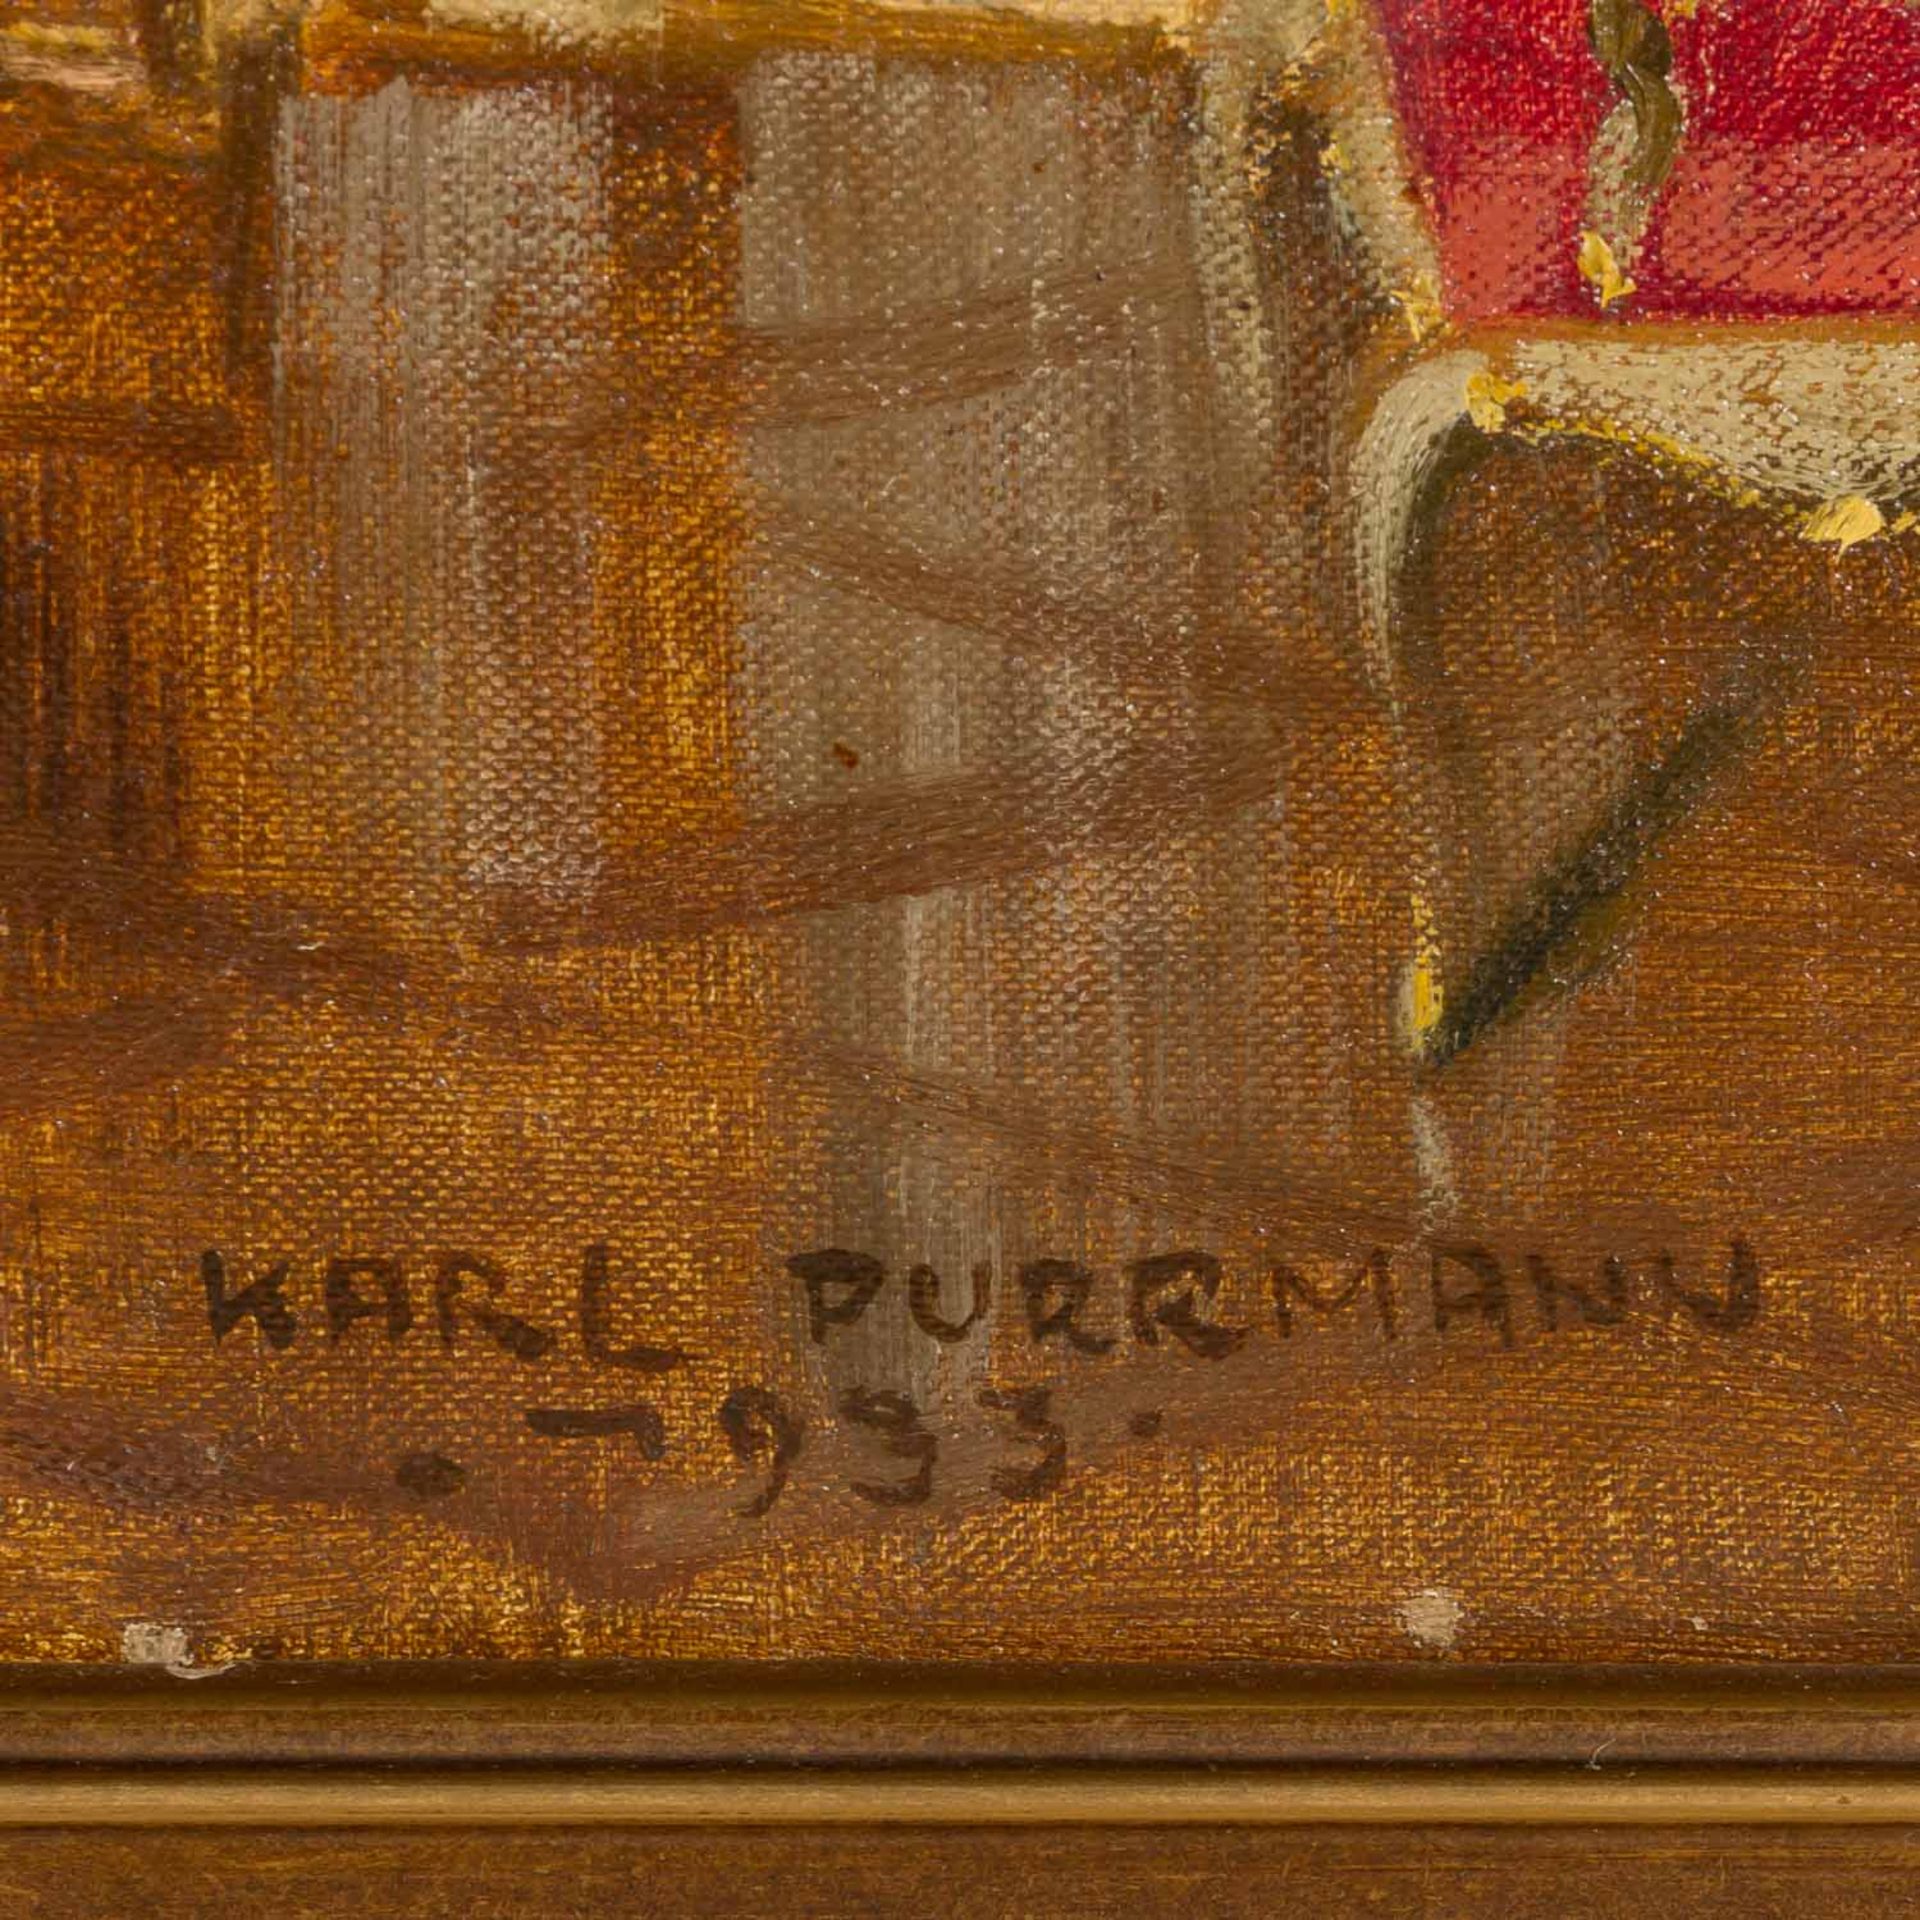 PURRMANN, KARL (1877-1966) "Salon eines Schlosses" 1933 - Bild 3 aus 6